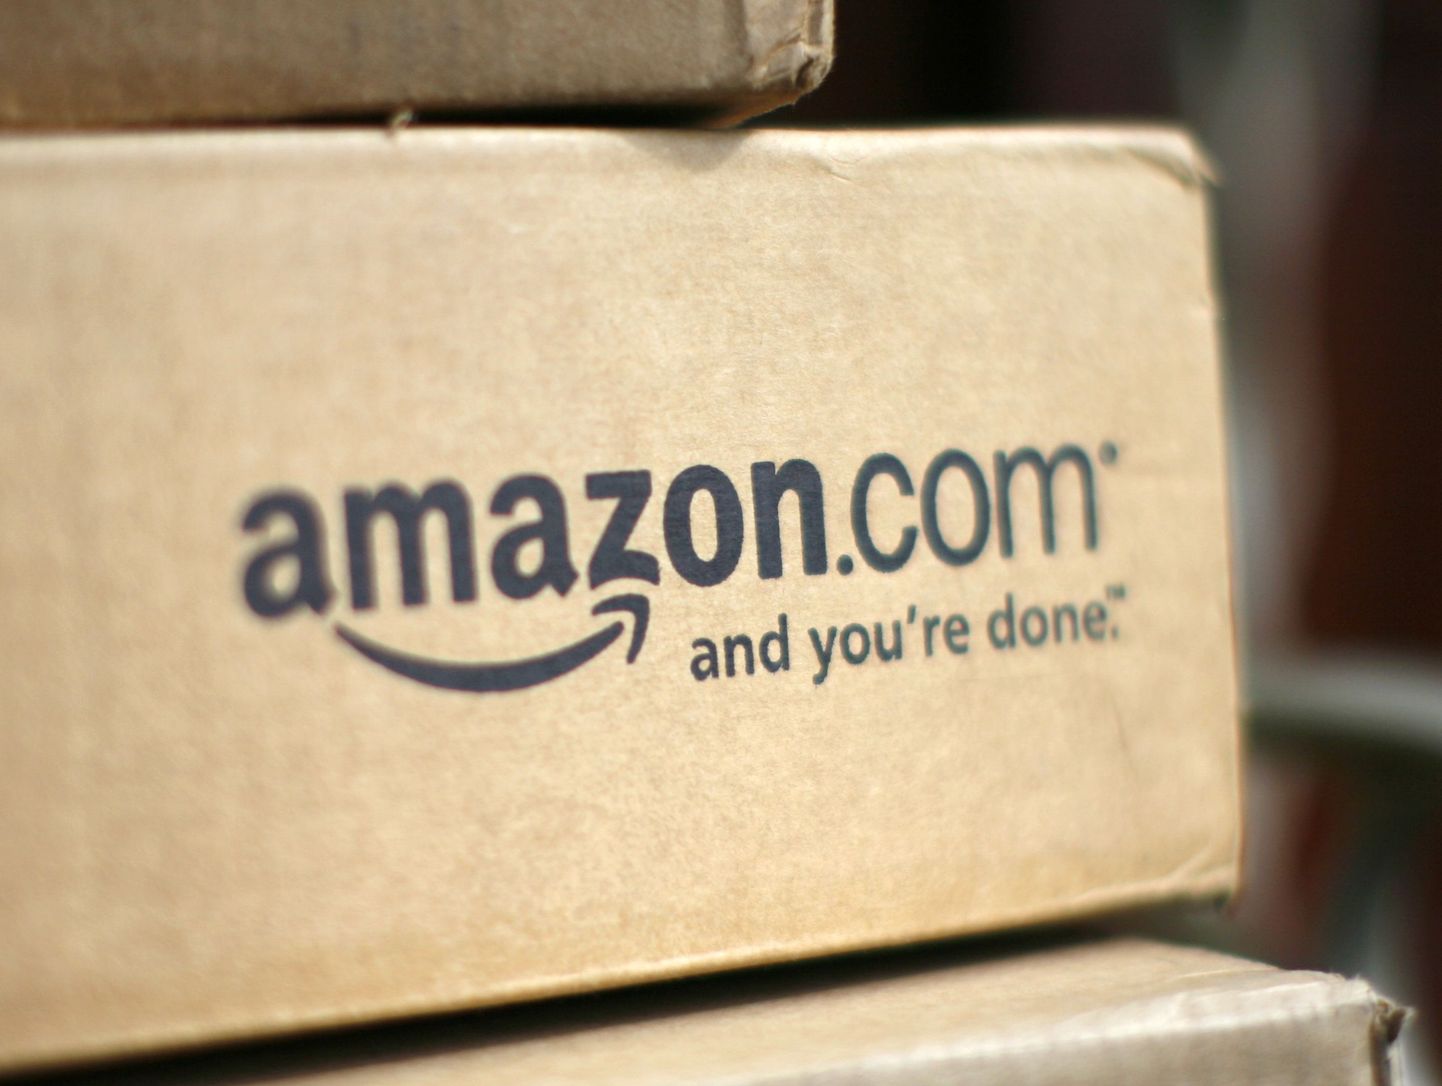 Maailma suurim internetikaubamaja Amazon.com kaubasaadetise karp